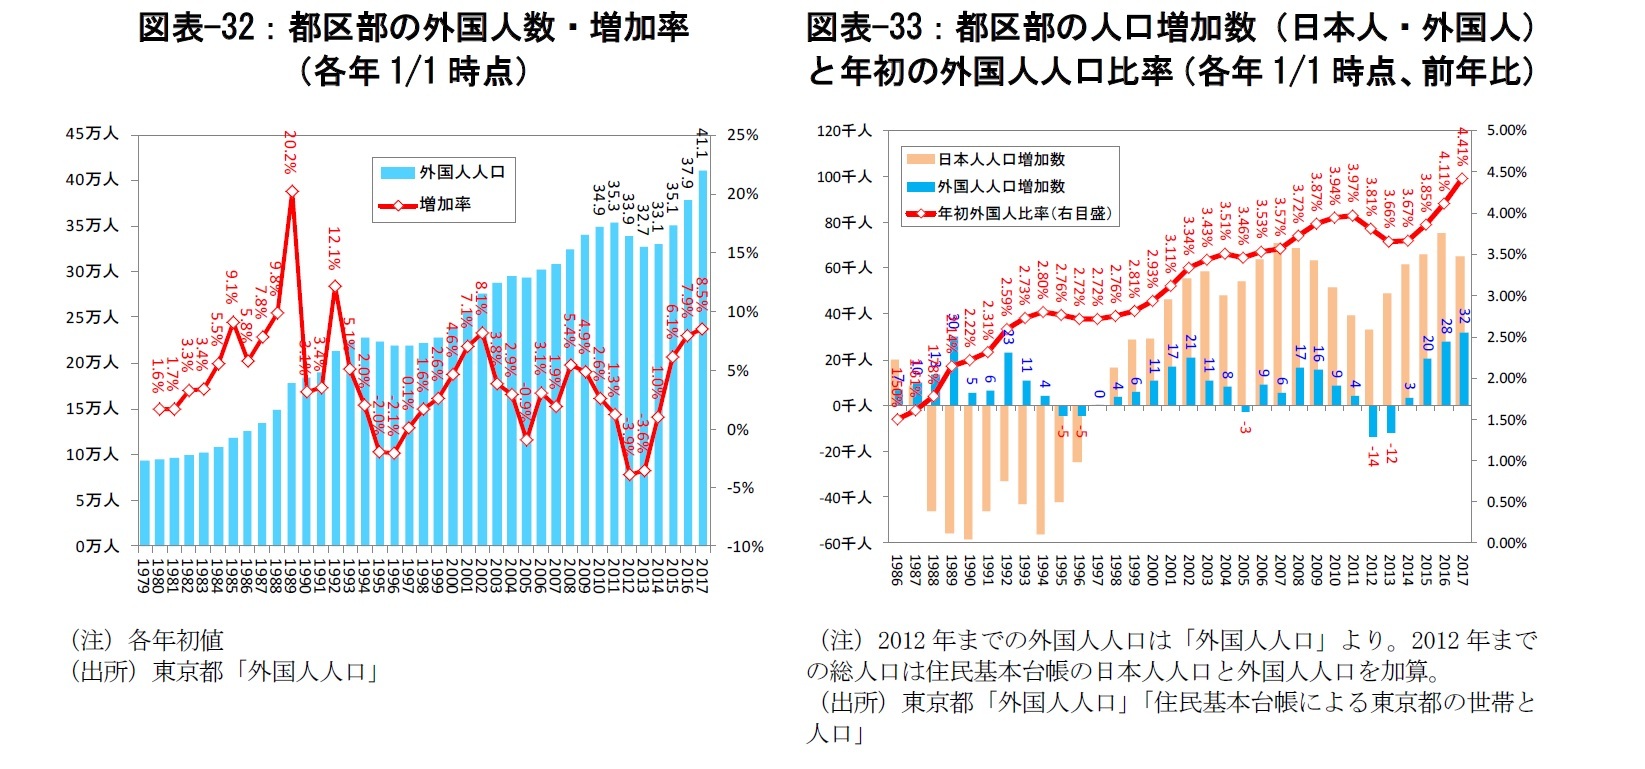 図表-32：都区部の外国人数・増加率（各年1/1時点）/図表-33：都区部の人口増加数（日本人・外国人）と年初の外国人人口比率（各年1/1時点、前年比）